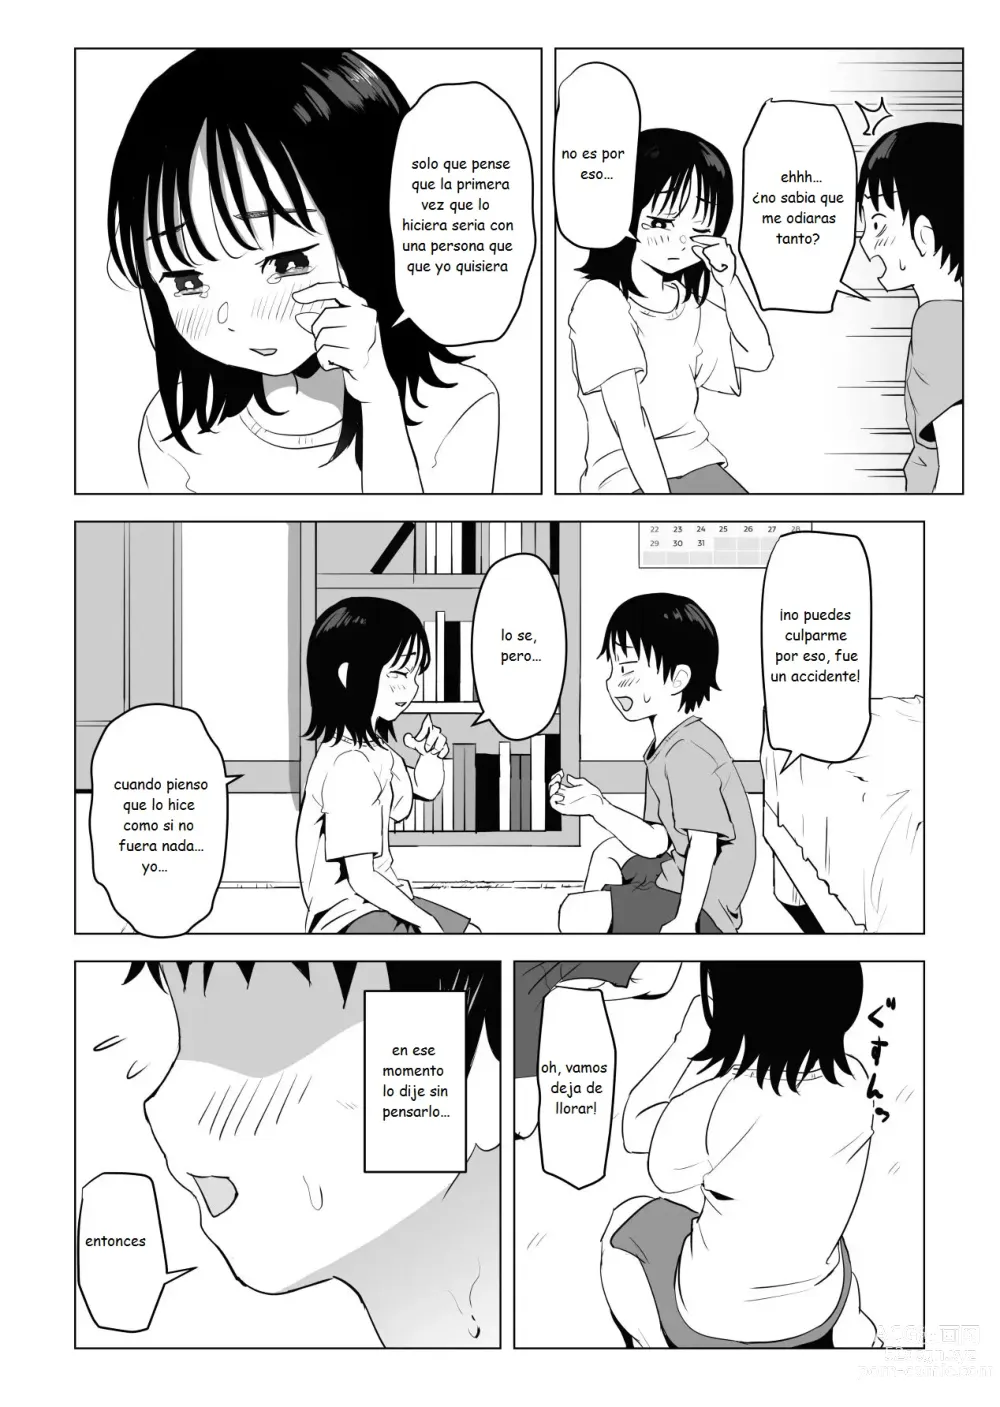 Page 7 of doujinshi Mi amiga de la infancia de grandes pechos y mi hermano se han estado conportado raro ultimamente